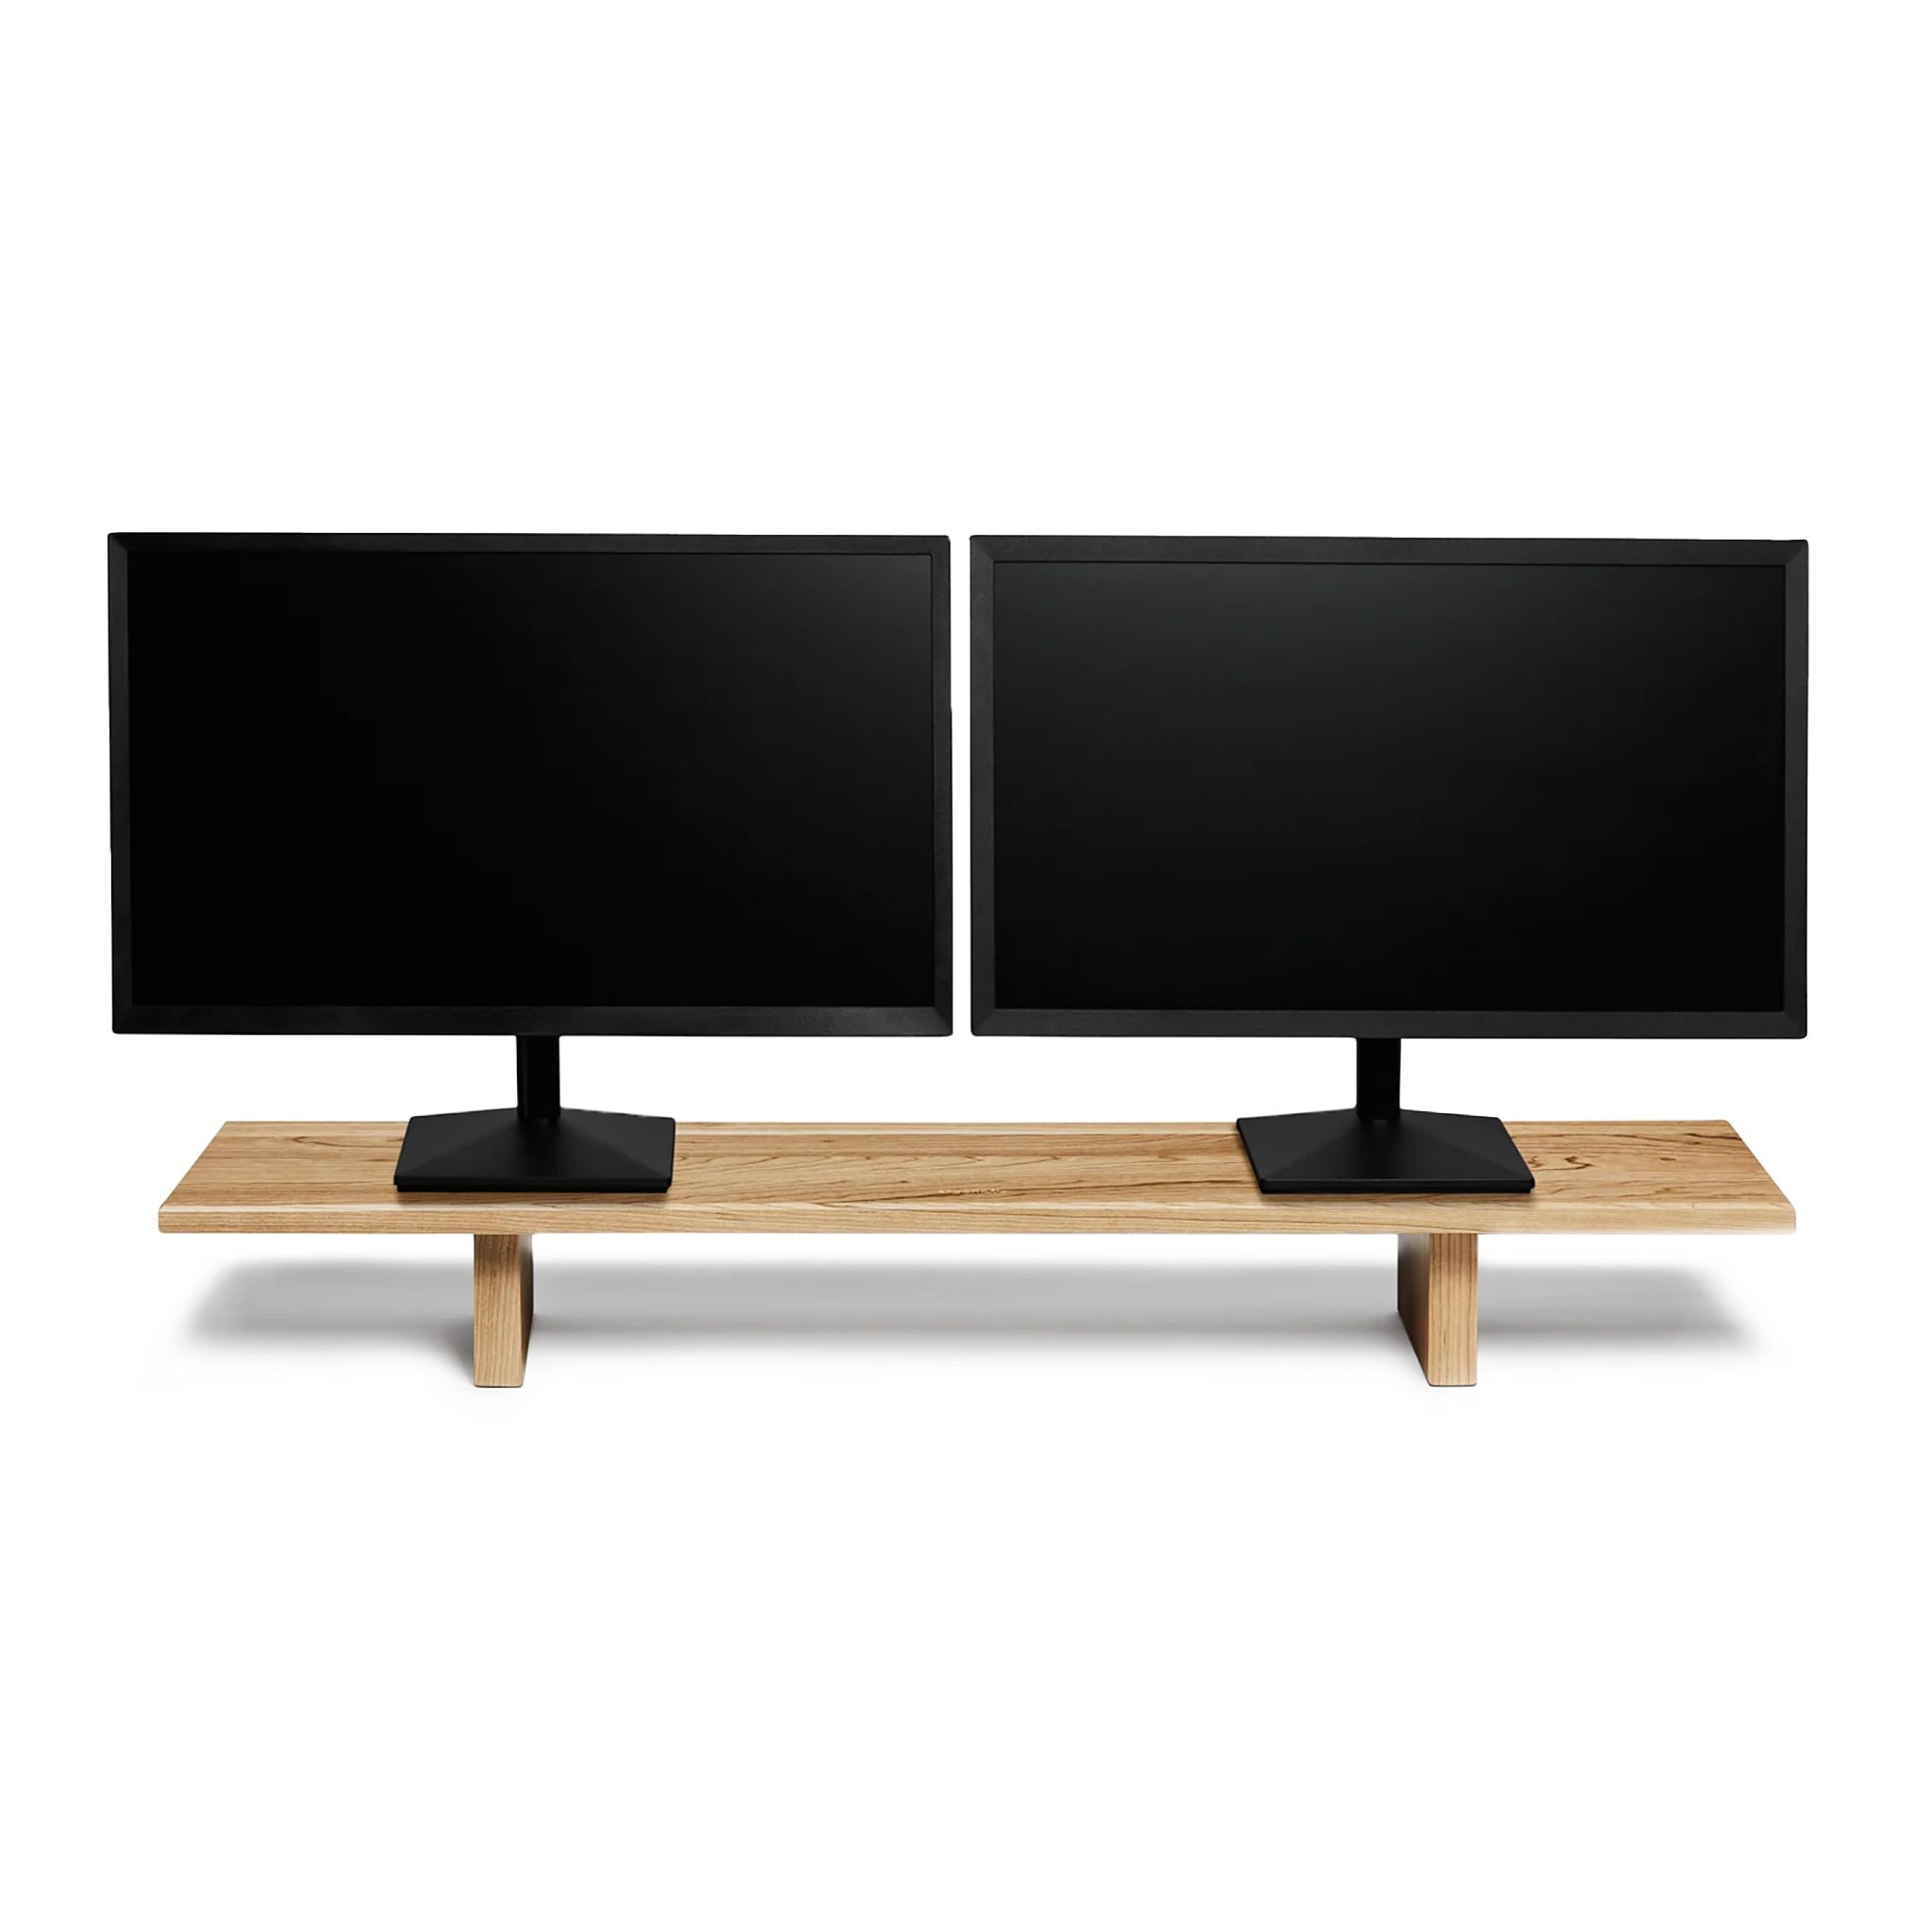 Monitor Stand - Wooden Desk Shelf | Ergonofis | ergonofis